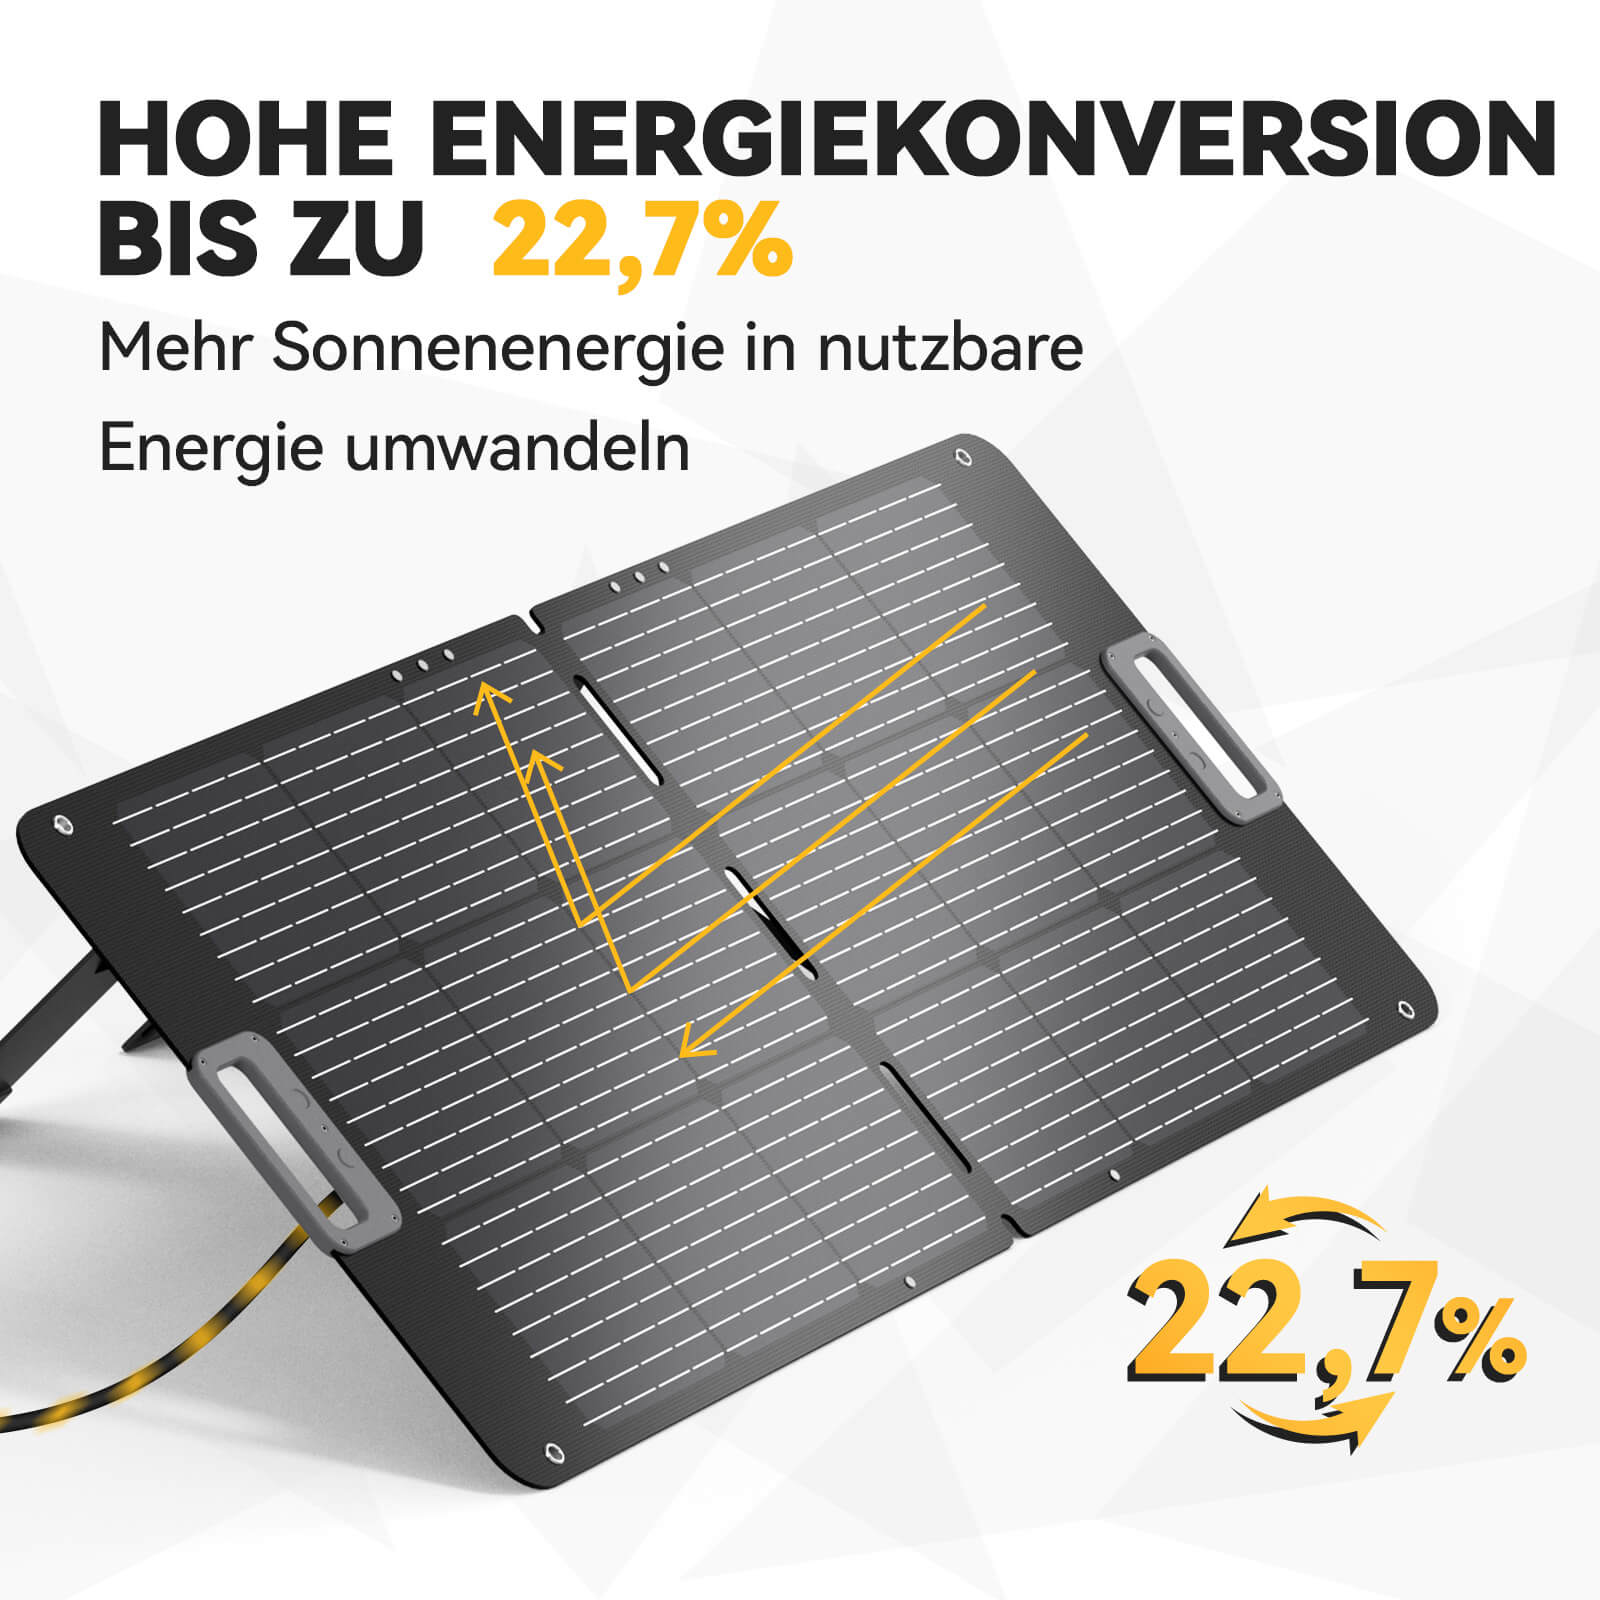 Panneau solaire portable Power Queen 100W pour centrale électrique portable P300